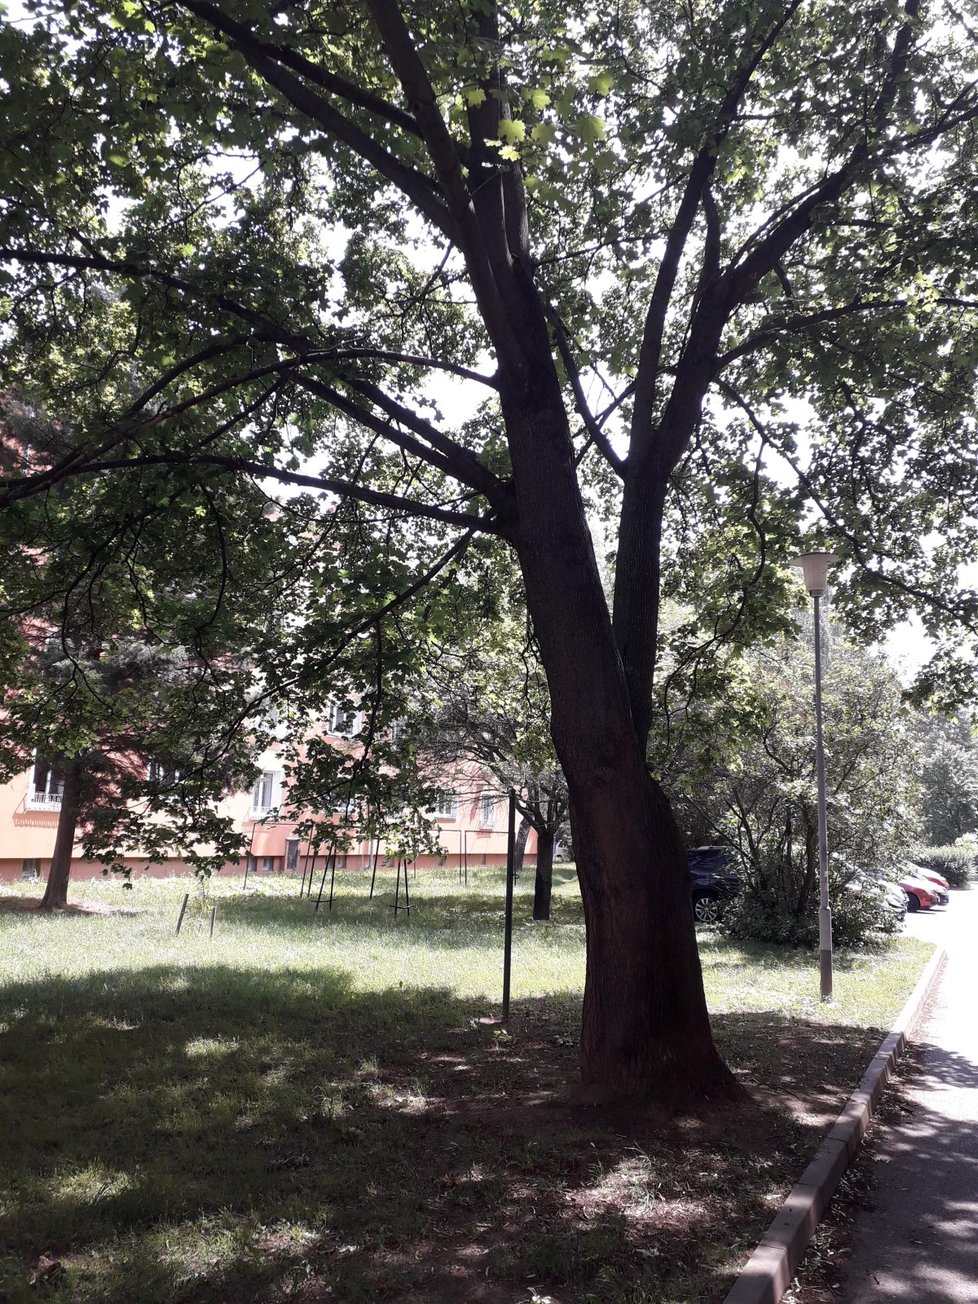 Malý strakapoud spadl ze stromu v parčíku v Chládkově ulici v Brně.